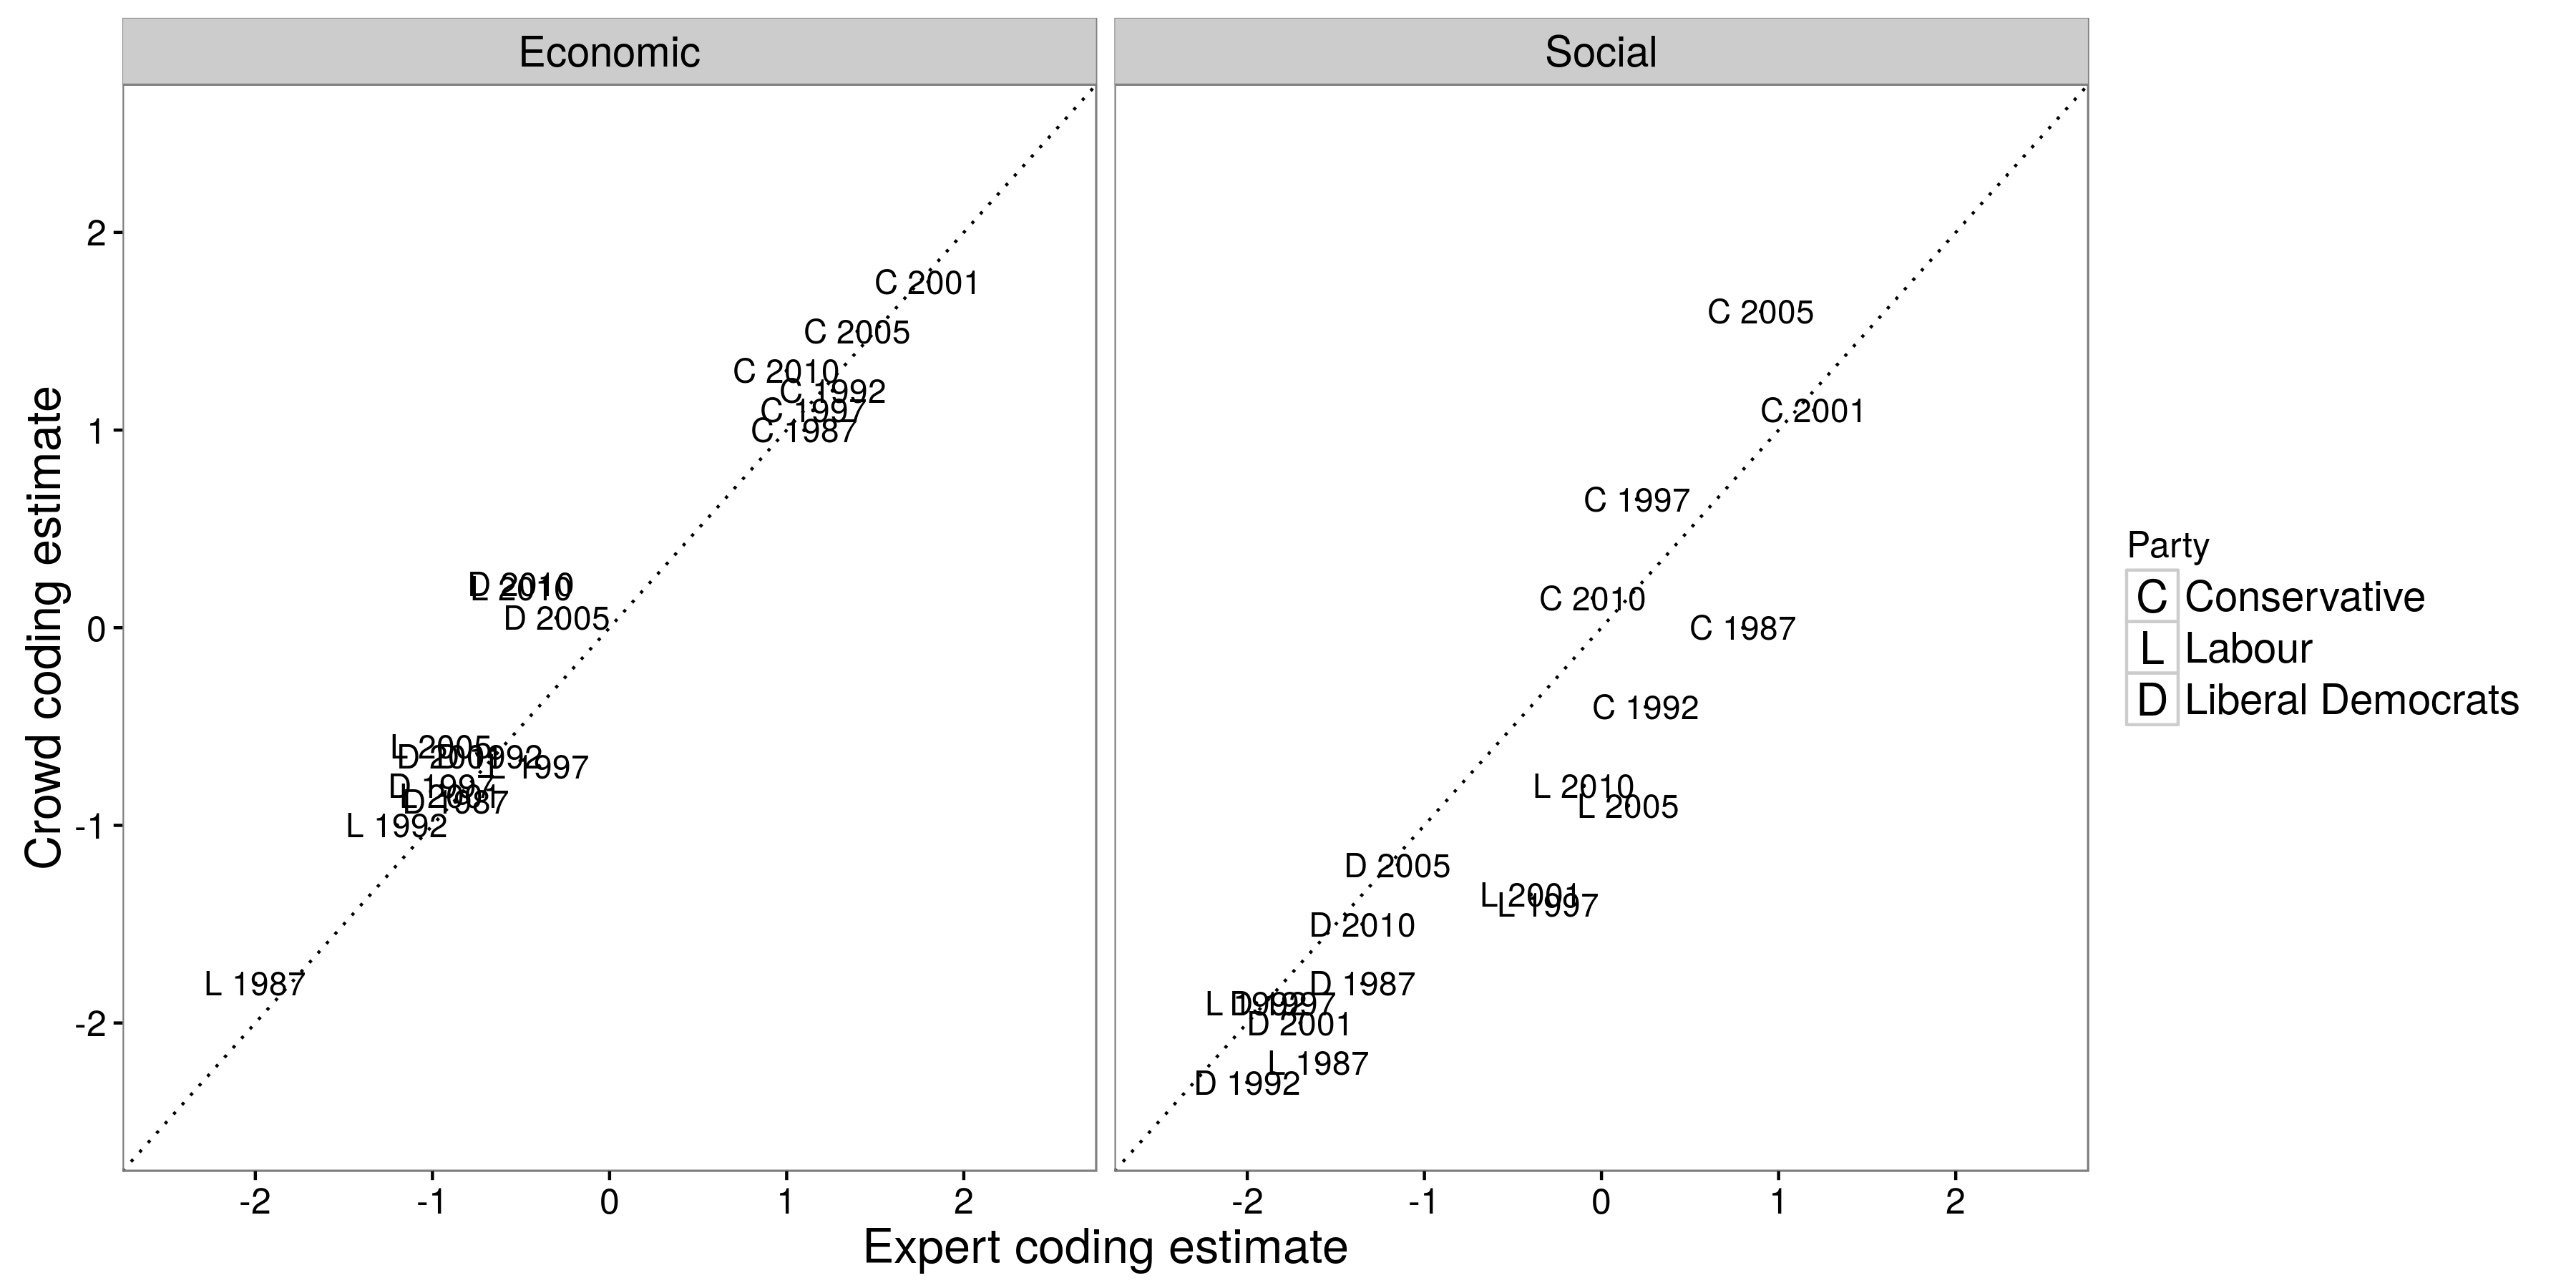 Σχήμα 5.6: Οι εκτιμήσεις εμπειρογνωμόνων (άξονας x) και οι εκτιμήσεις πλήθους (άξονας y) ήταν σε αξιοσημείωτη συμφωνία όταν κωδικοποιούσαμε 18 εκδηλώσεις από το Ηνωμένο Βασίλειο (Benoit et al., 2016). Τα κωδικοποιημένα πρότυπα ήταν από τρία πολιτικά κόμματα (Συντηρητικοί, Εργατικοί και Φιλελεύθεροι Δημοκράτες) και έξι εκλογές (1987, 1992, 1997, 2001, 2005 και 2010). Προσαρμοσμένη από τους Benoit et αϊ. (2016), σχήμα 3.